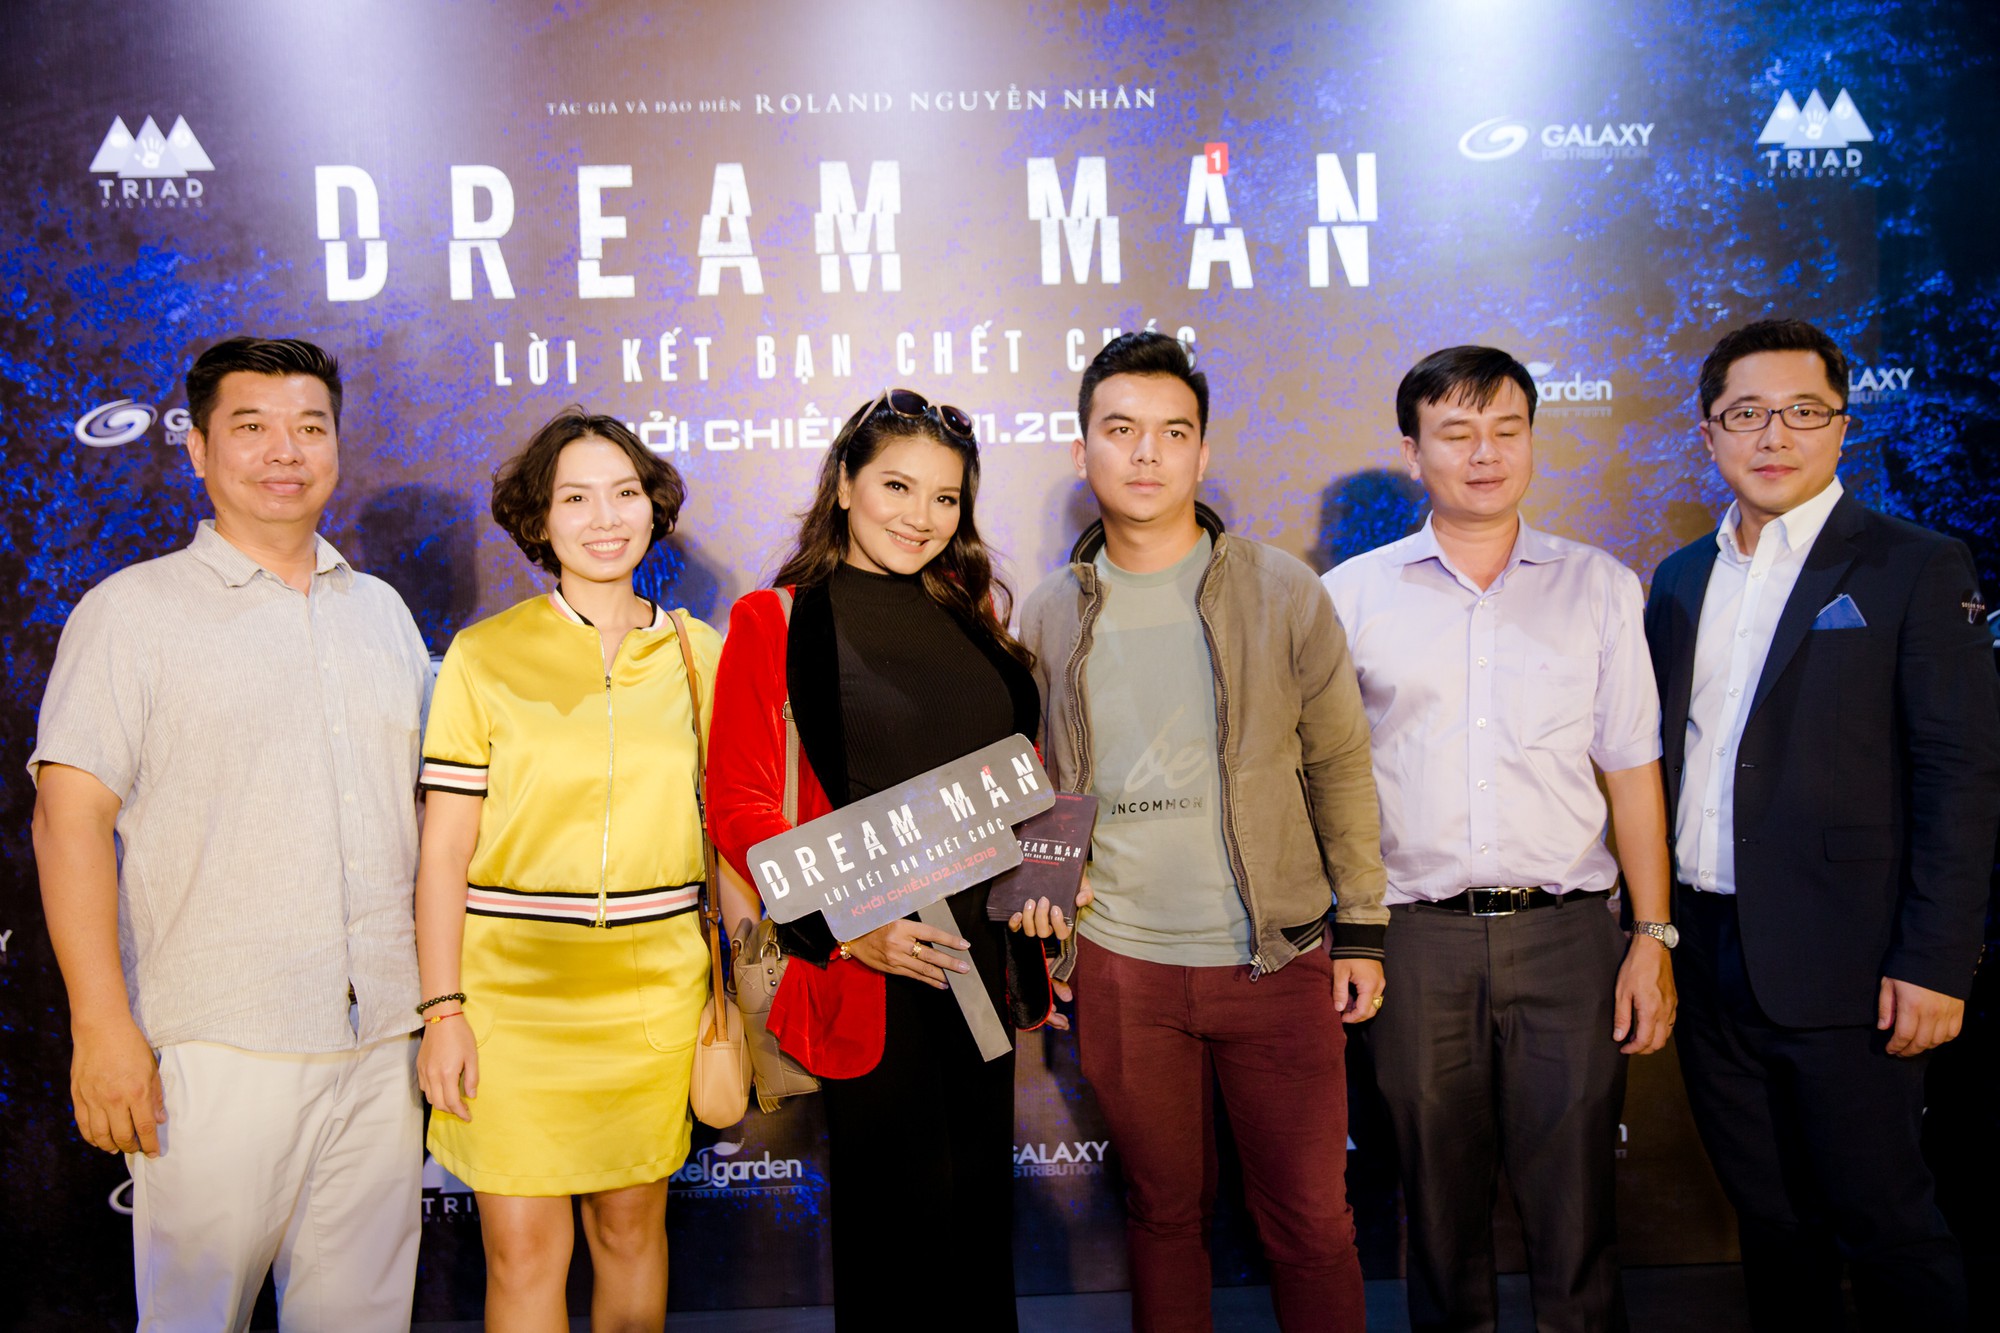 Thanh Tú lạnh lùng giữa dàn sao Việt tại buổi ra mắt phim Dream Man - Ảnh 10.